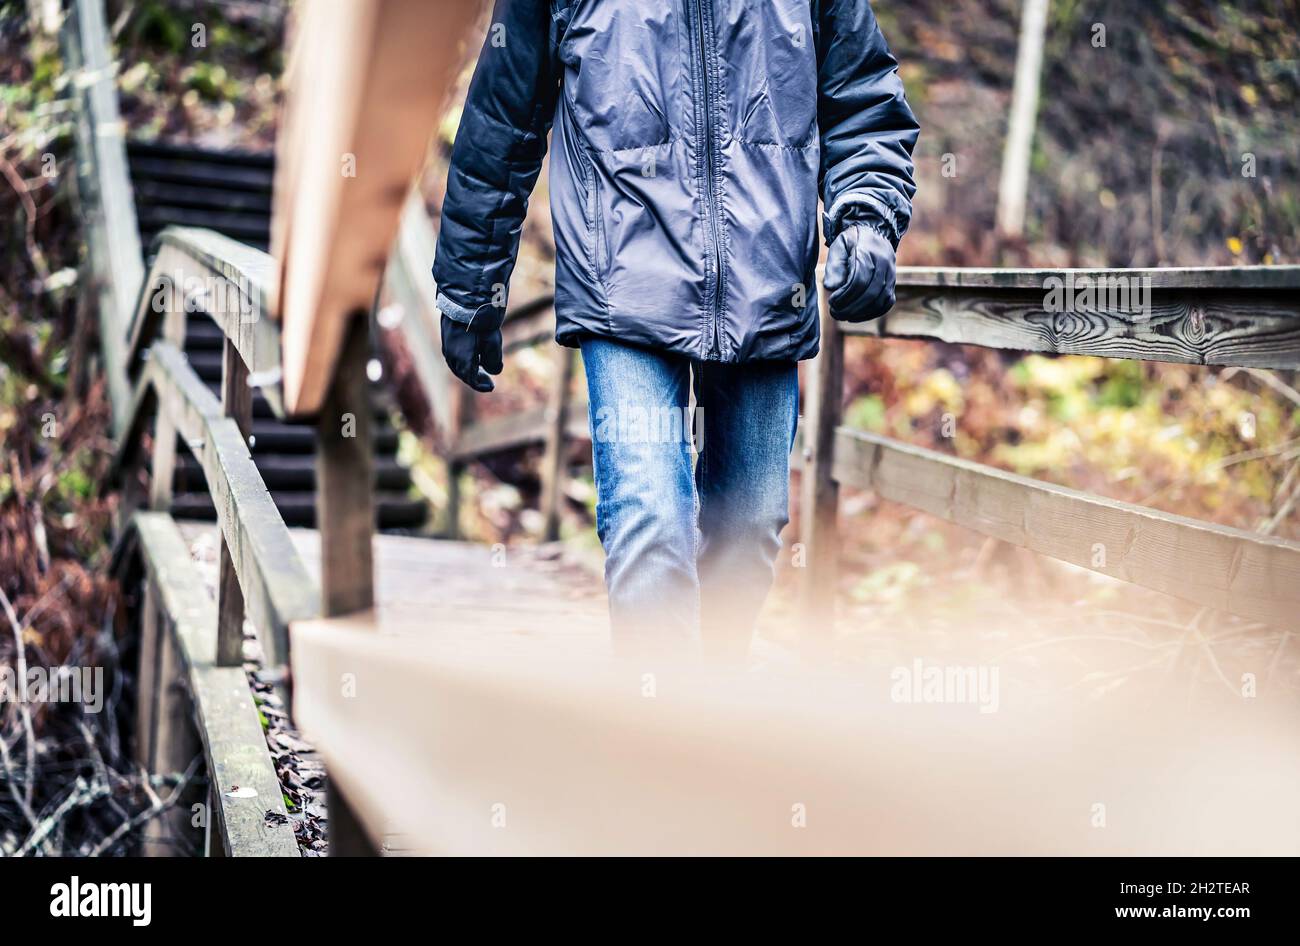 Otoño, invierno o otoño caminar en el bosque. Hombre en un camino de madera, camino o puente. Feliz excursionista con chaqueta y jeans disfrutando de la diversión al aire libre. Foto de stock